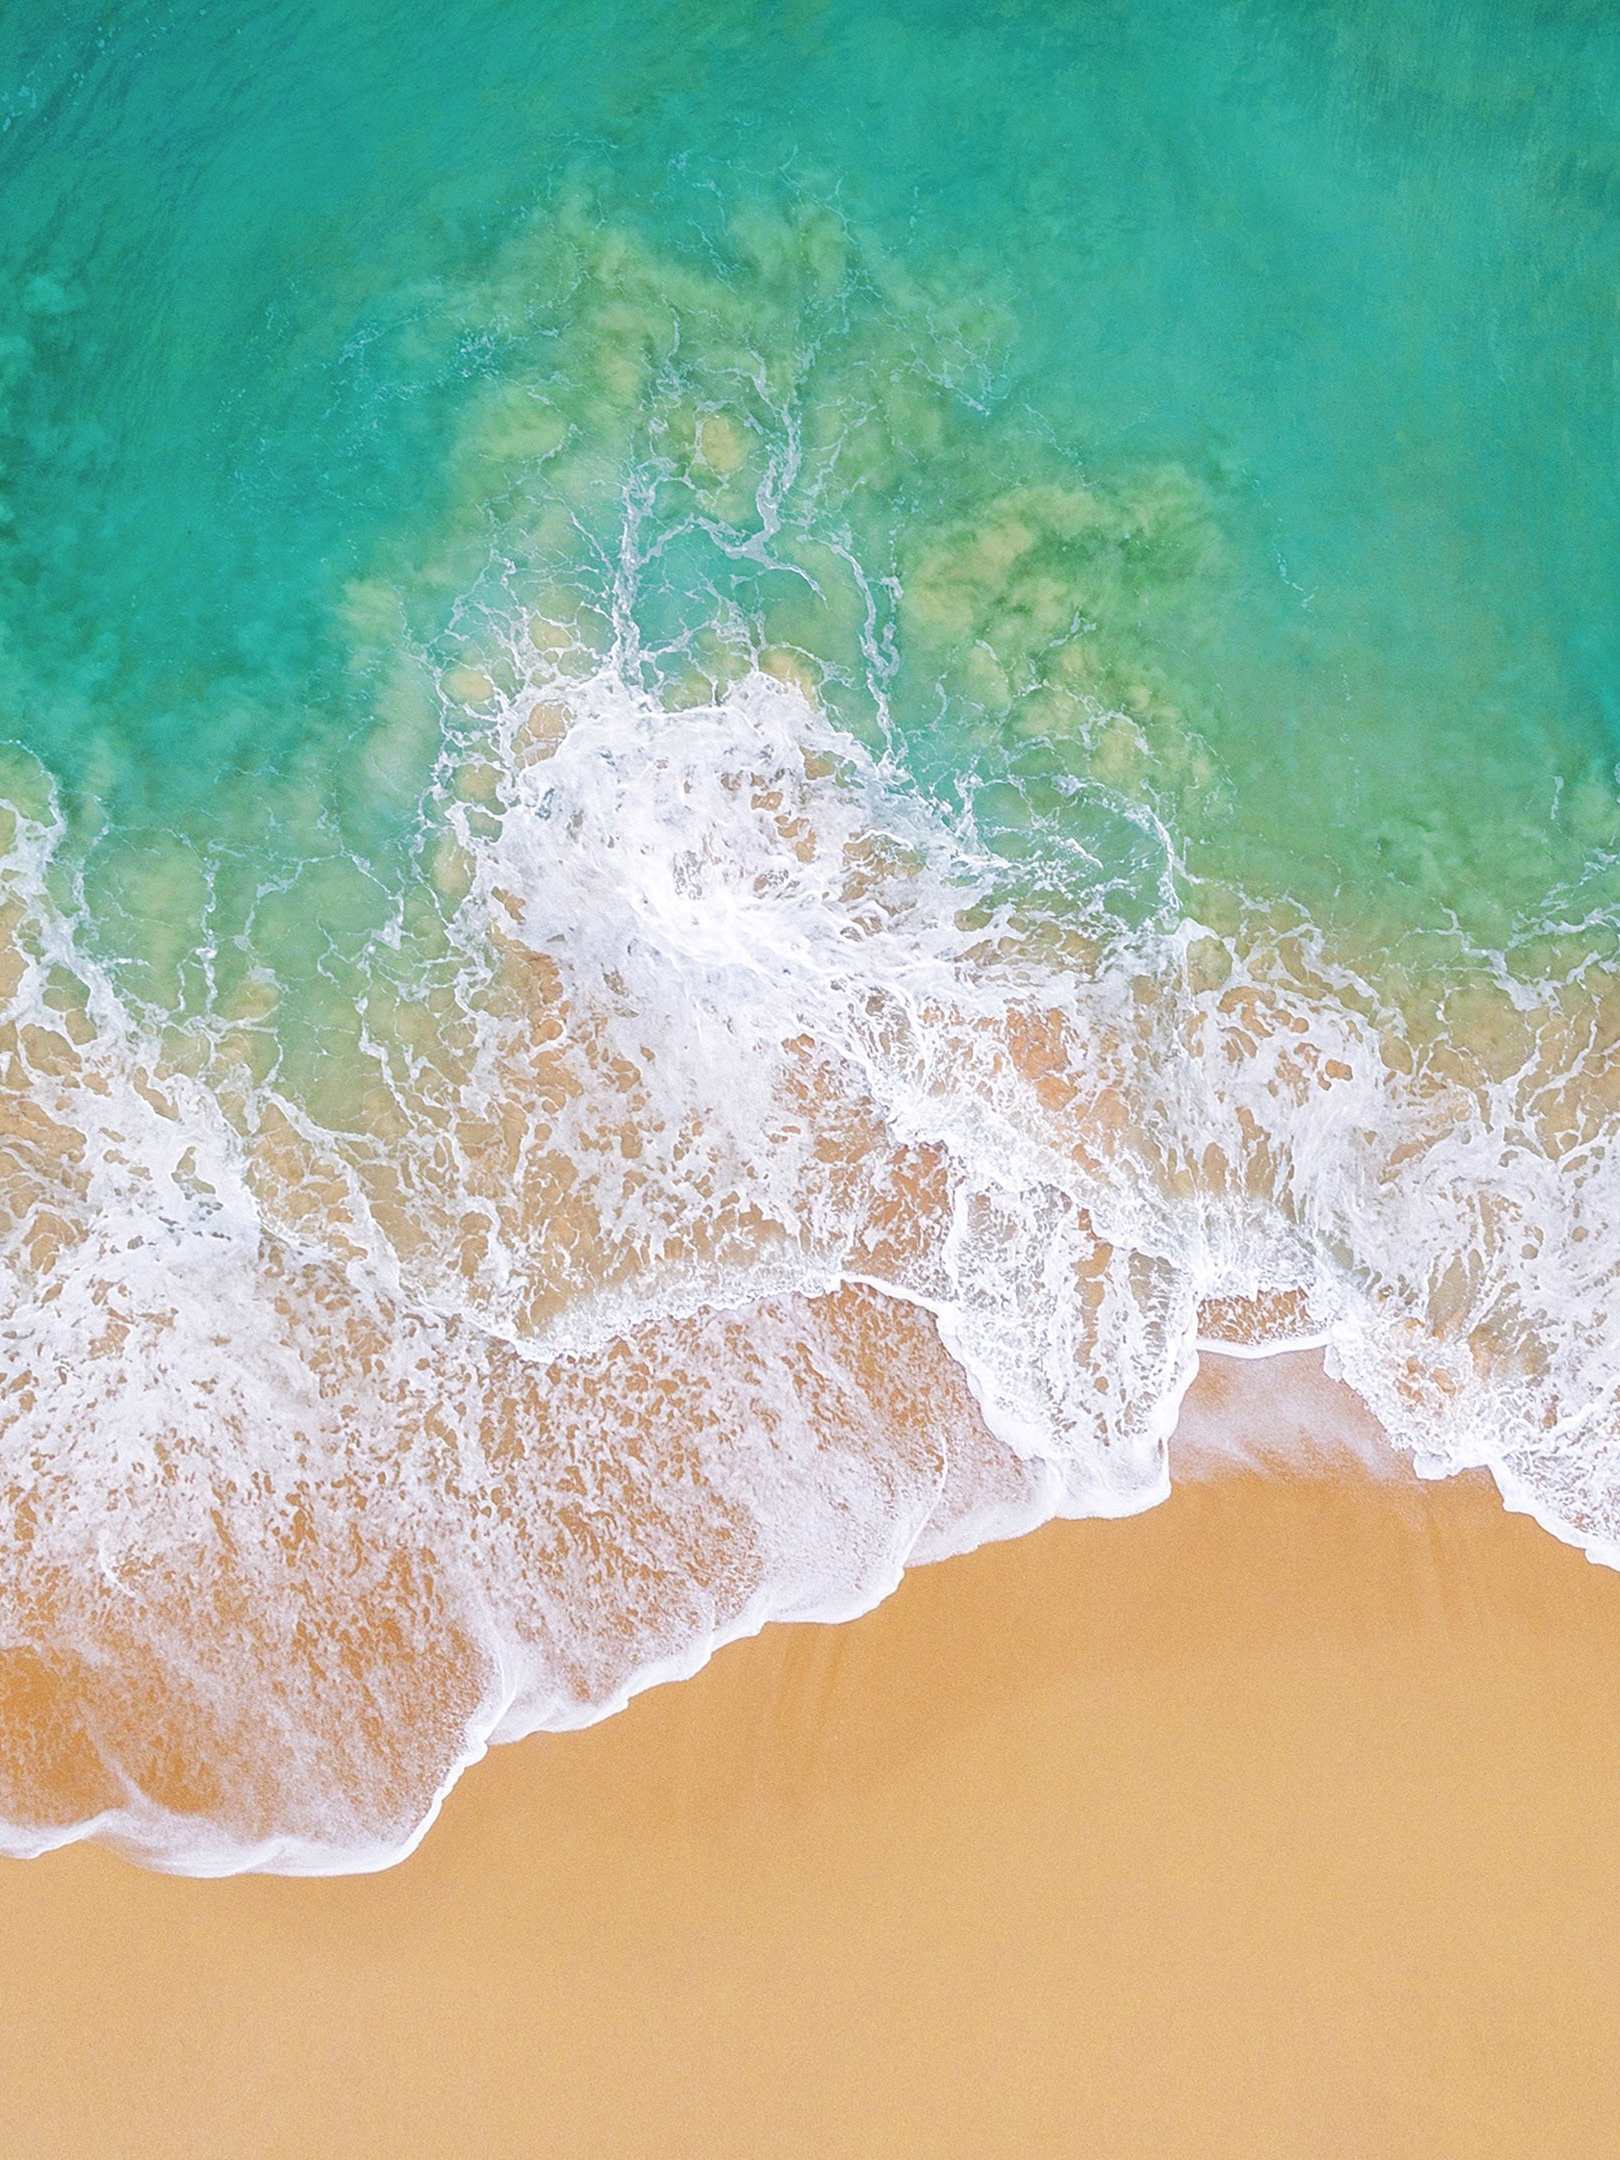 Скачать картинку Море, Пляж, Песок, Воздушный, Антенна, Земля/природа в телефон бесплатно.